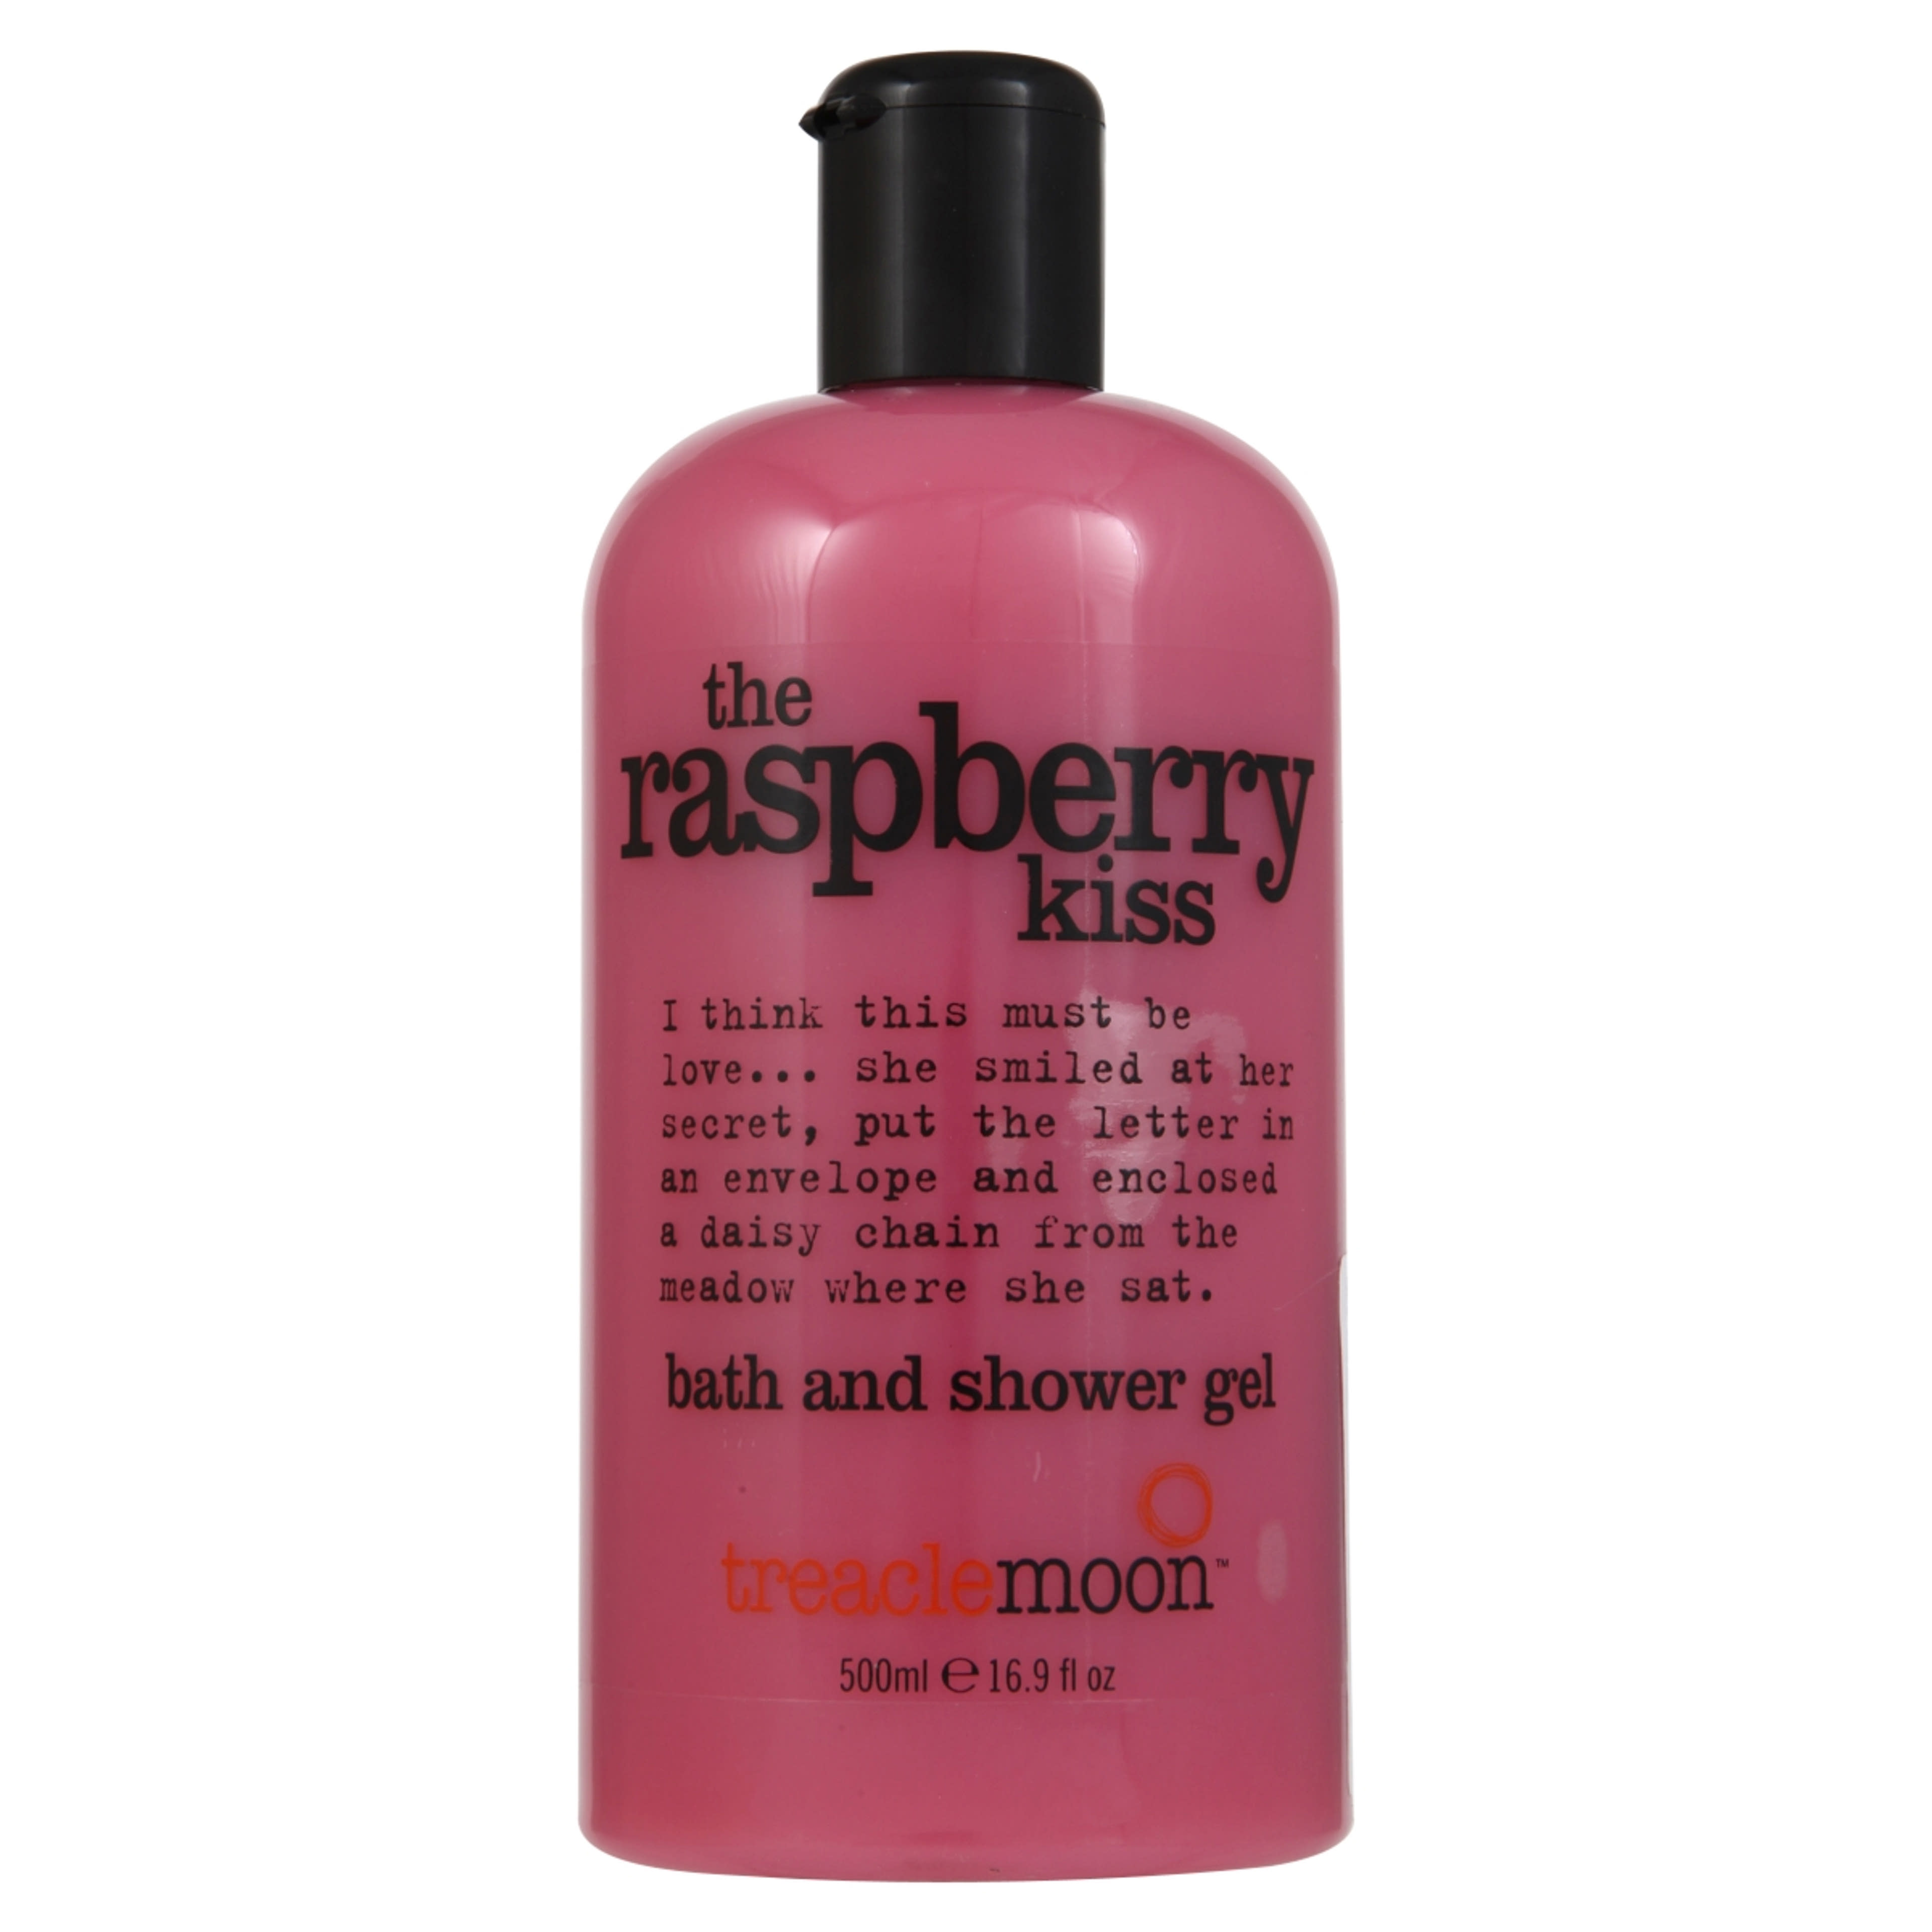 Treaclemoon tusfürdő Raspberry kiss málnás - 500 ml